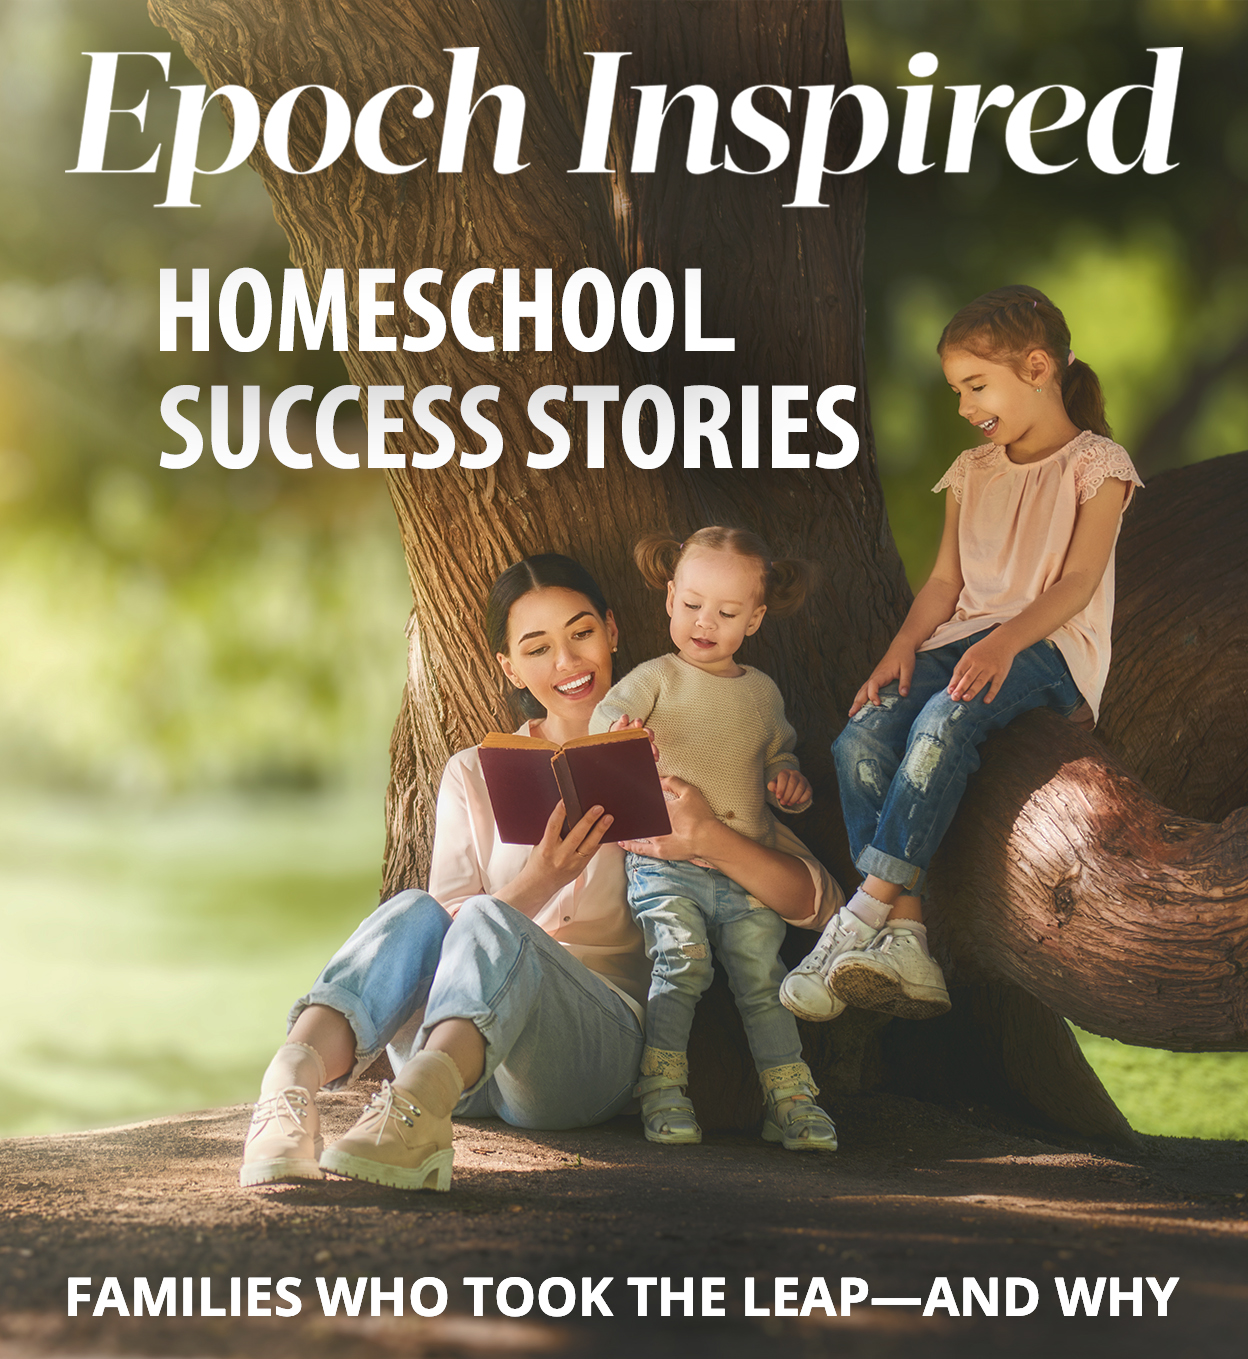 Homeschool Success Stories